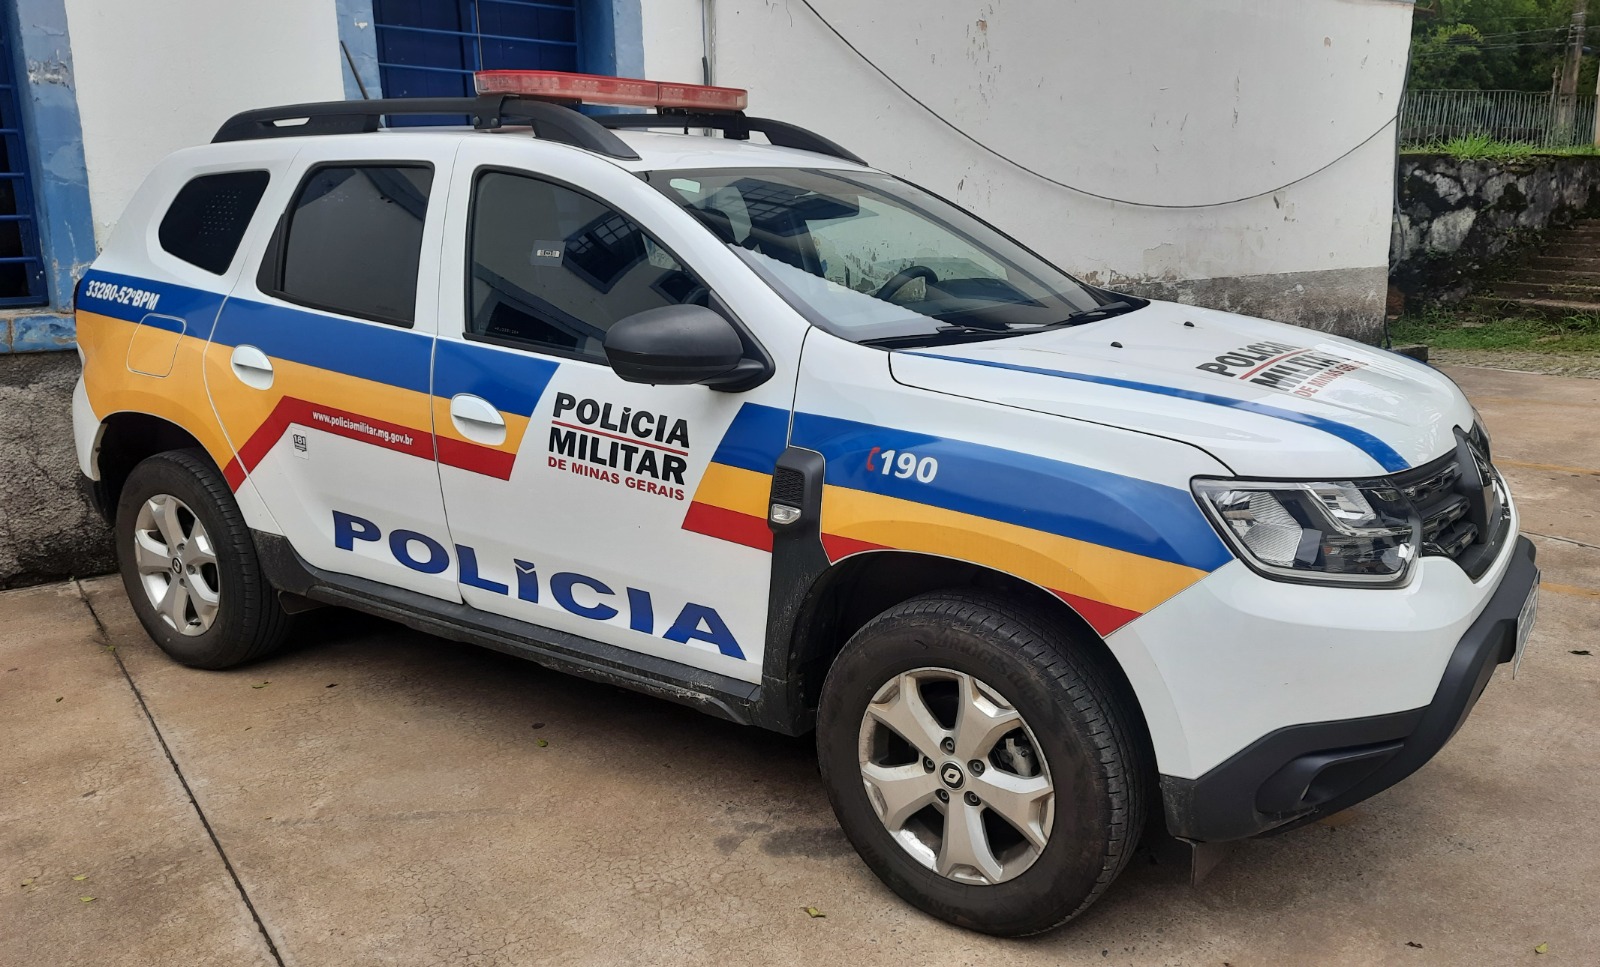 Foto: Polícia Militar de Ouro Preto